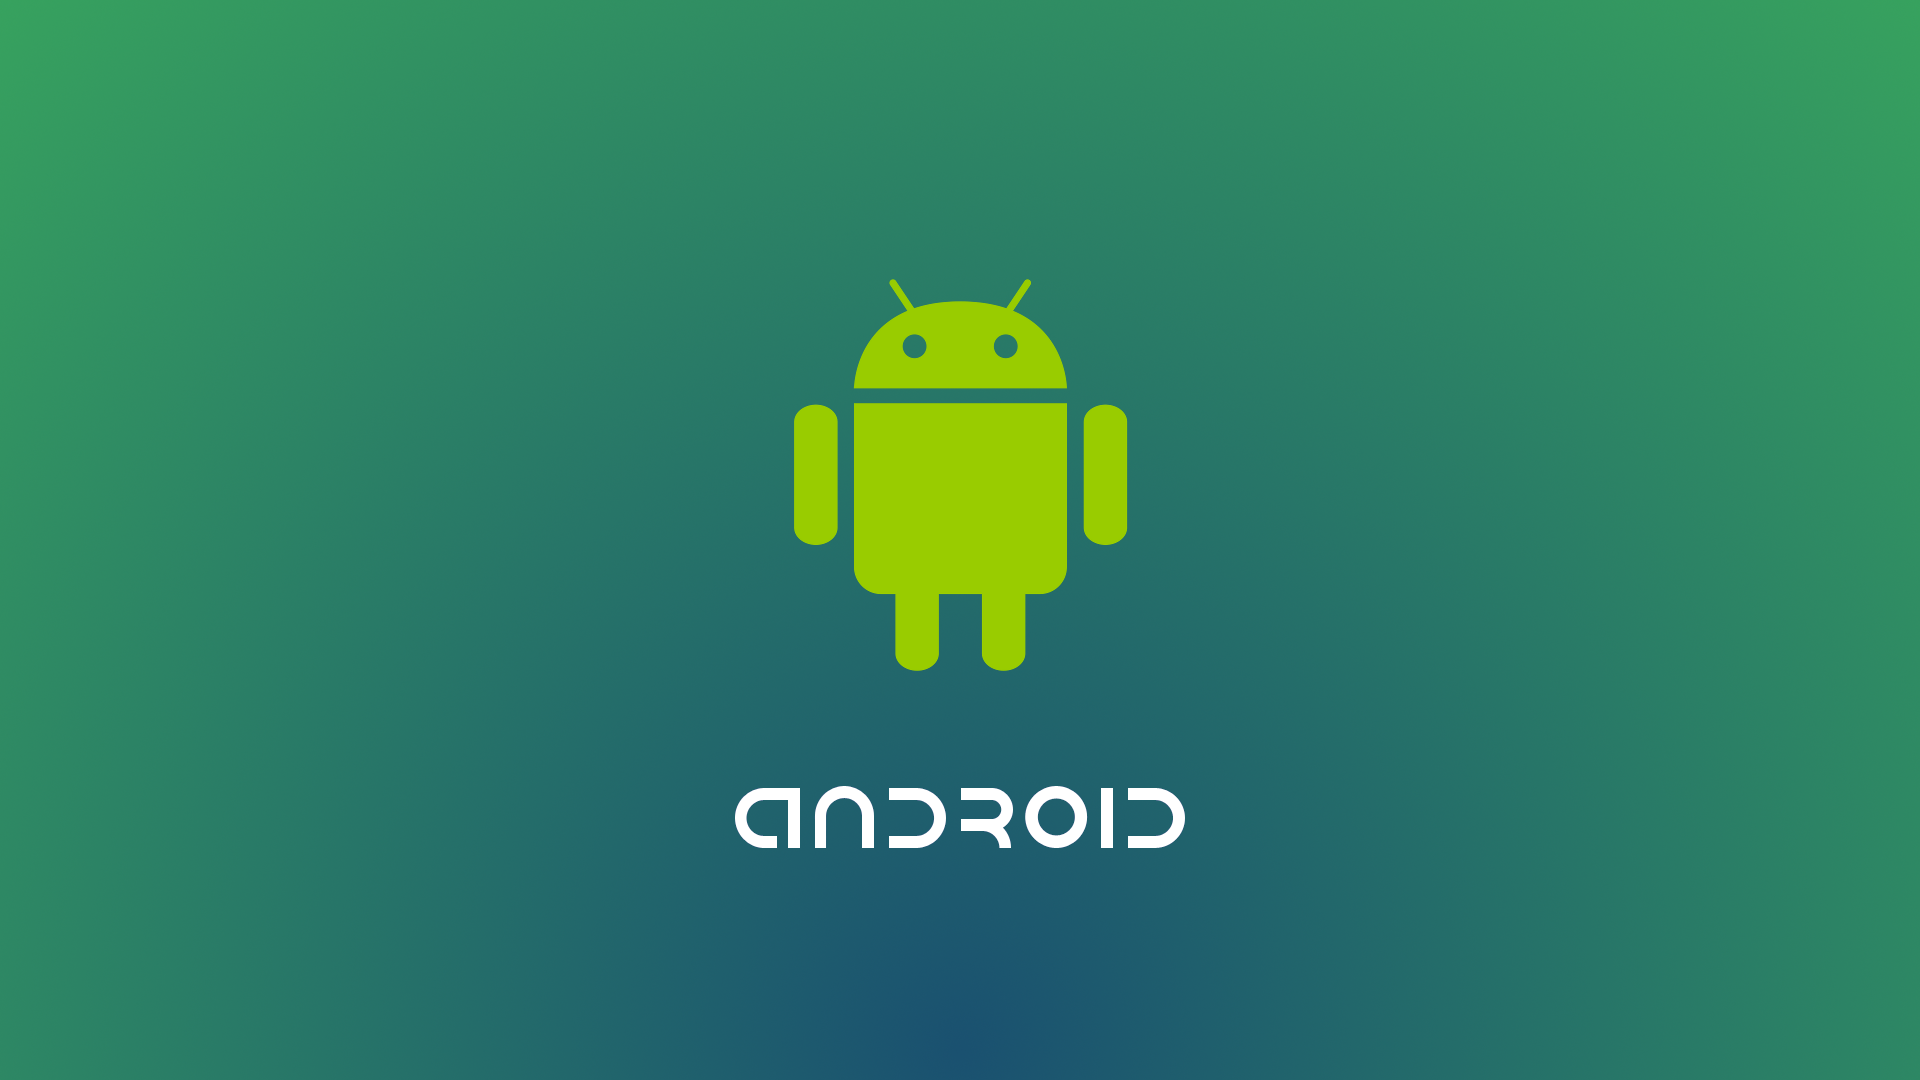 Dettagli su come scaricare app Android gratis oggi 13 dicembre